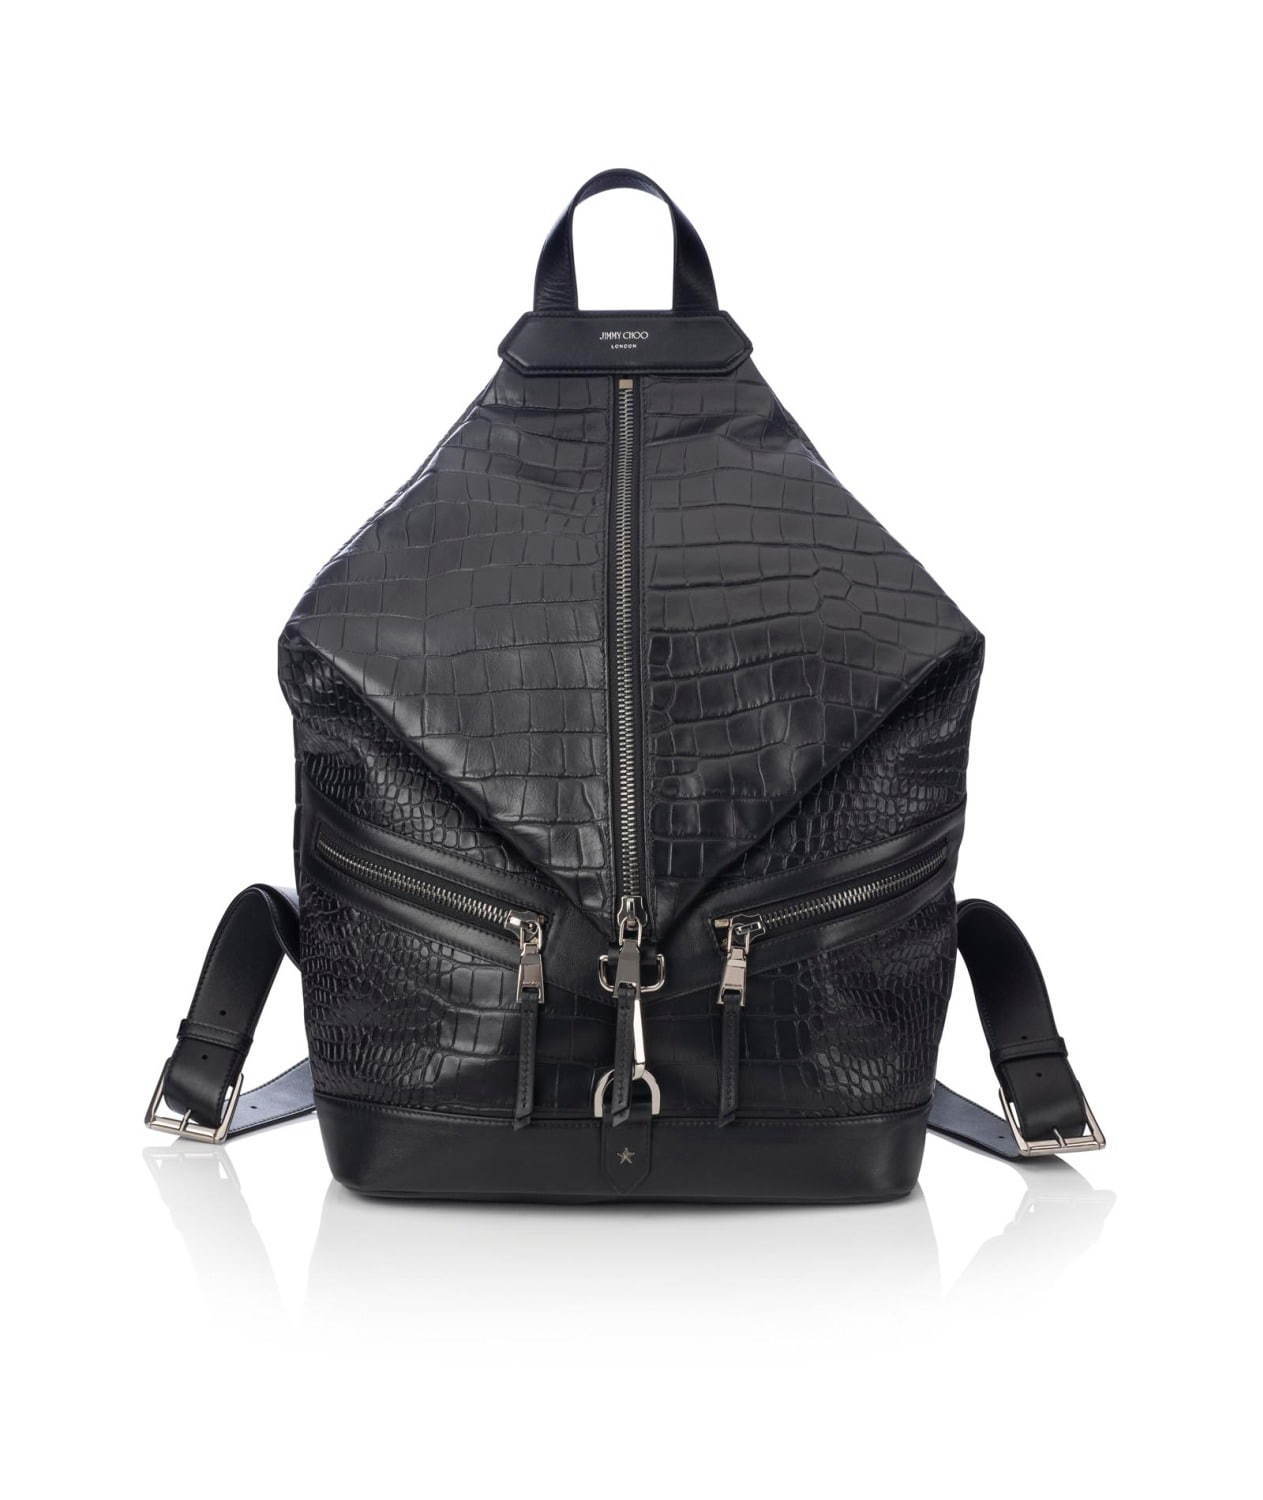 ジミー チュウの新作メンズバッグ レザーグッズ クロコダイルエンボスのバックパックや財布など ファッションプレス